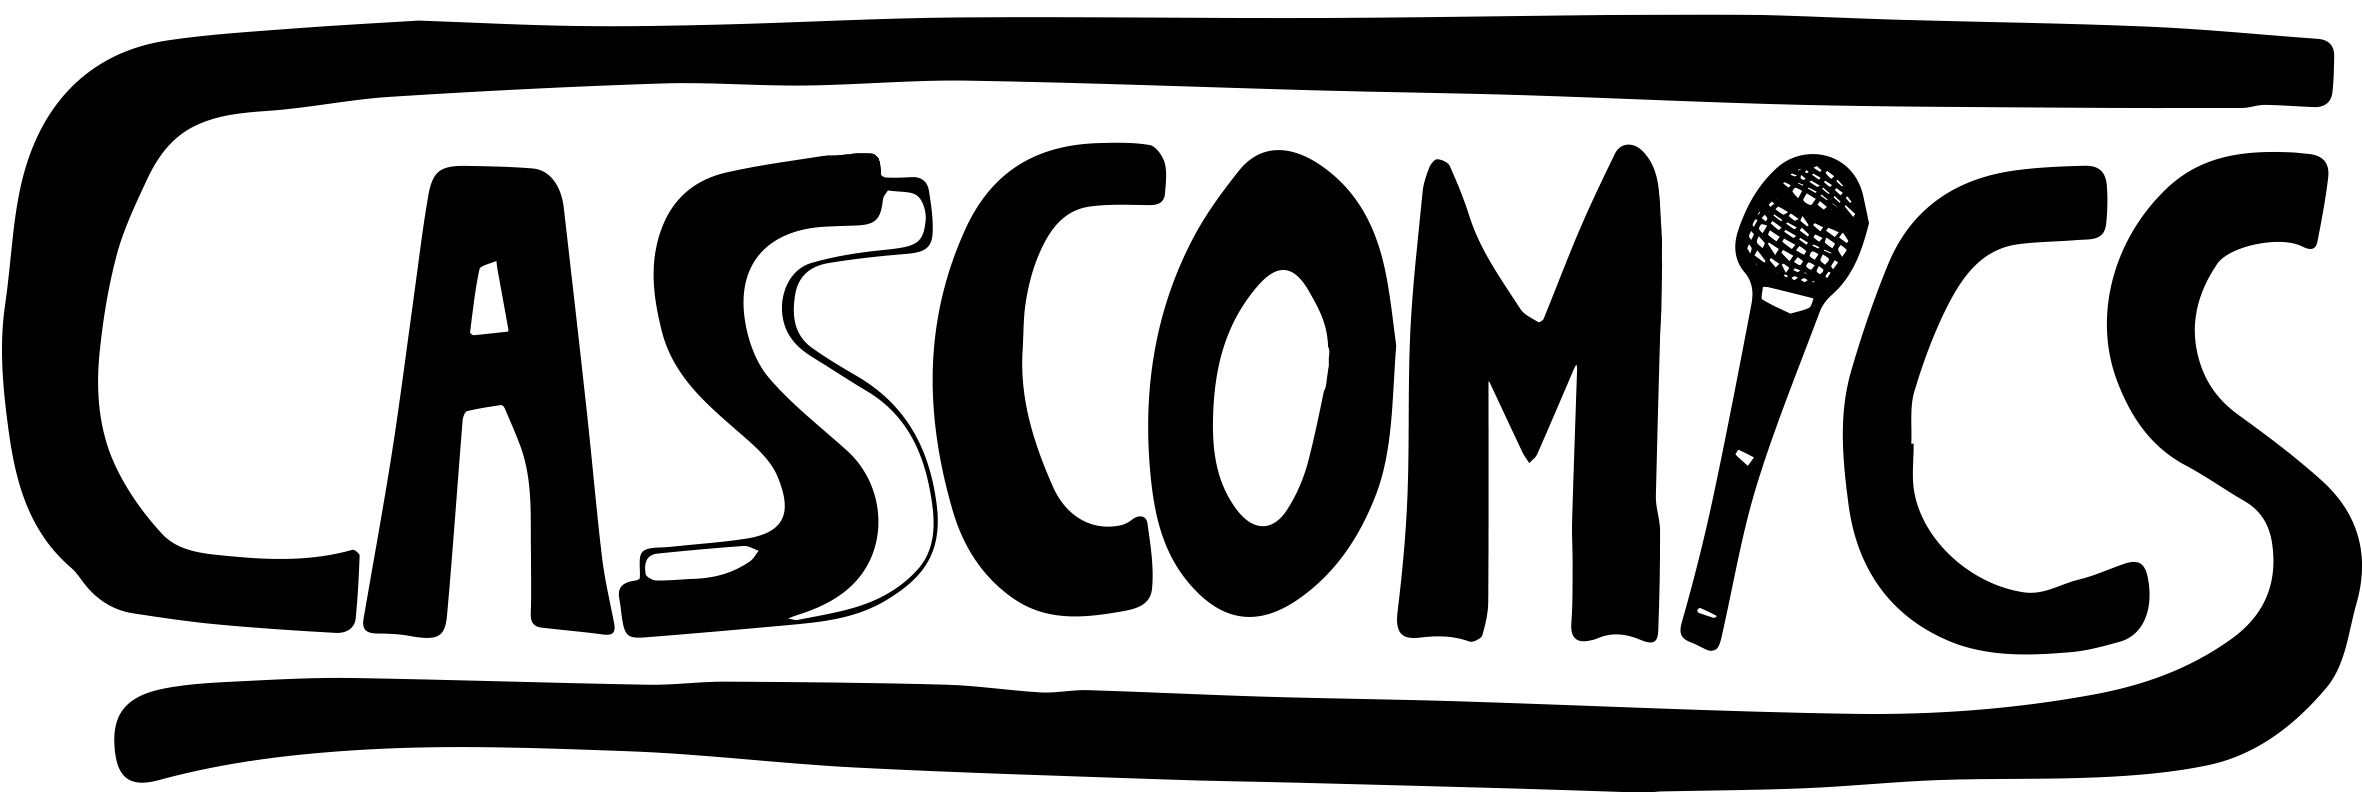 casscomics logo